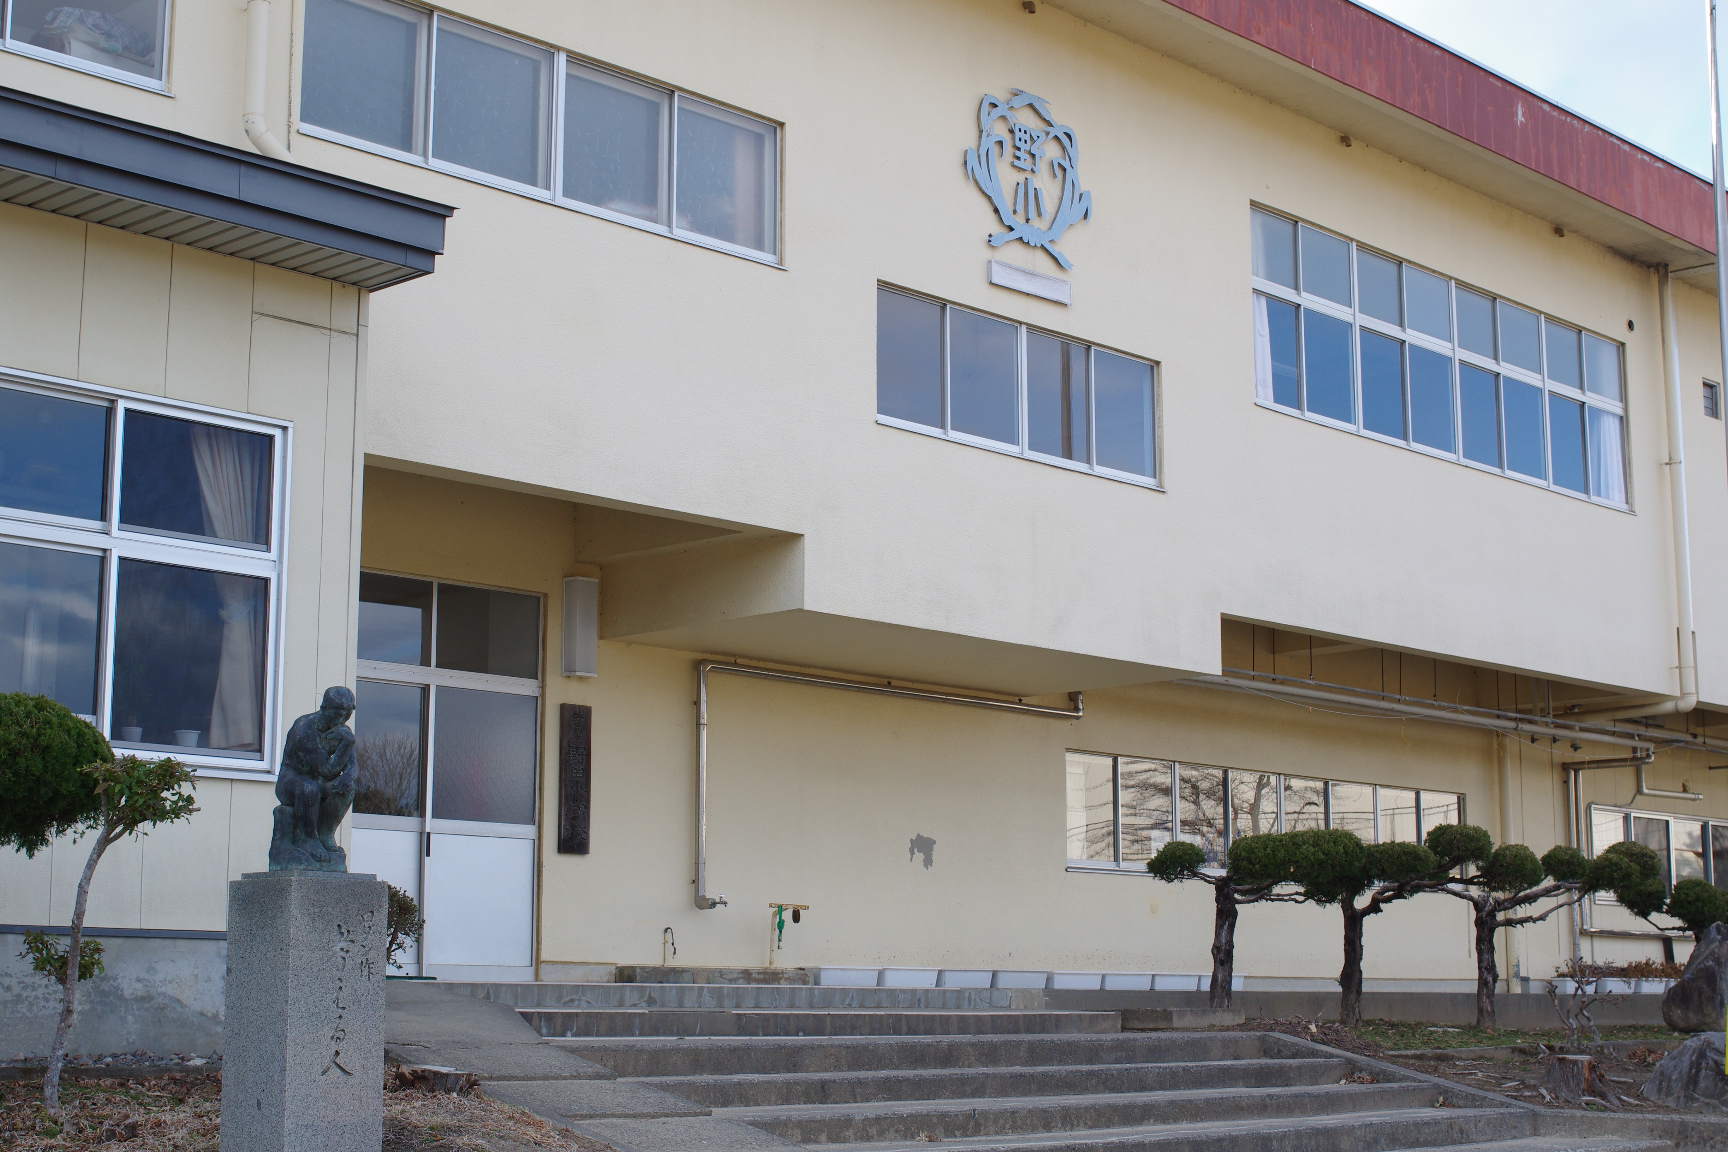 クリーム色の外壁で校章が表記されており、考える人の銅像が建物前に設置されている野田小学校の外観写真